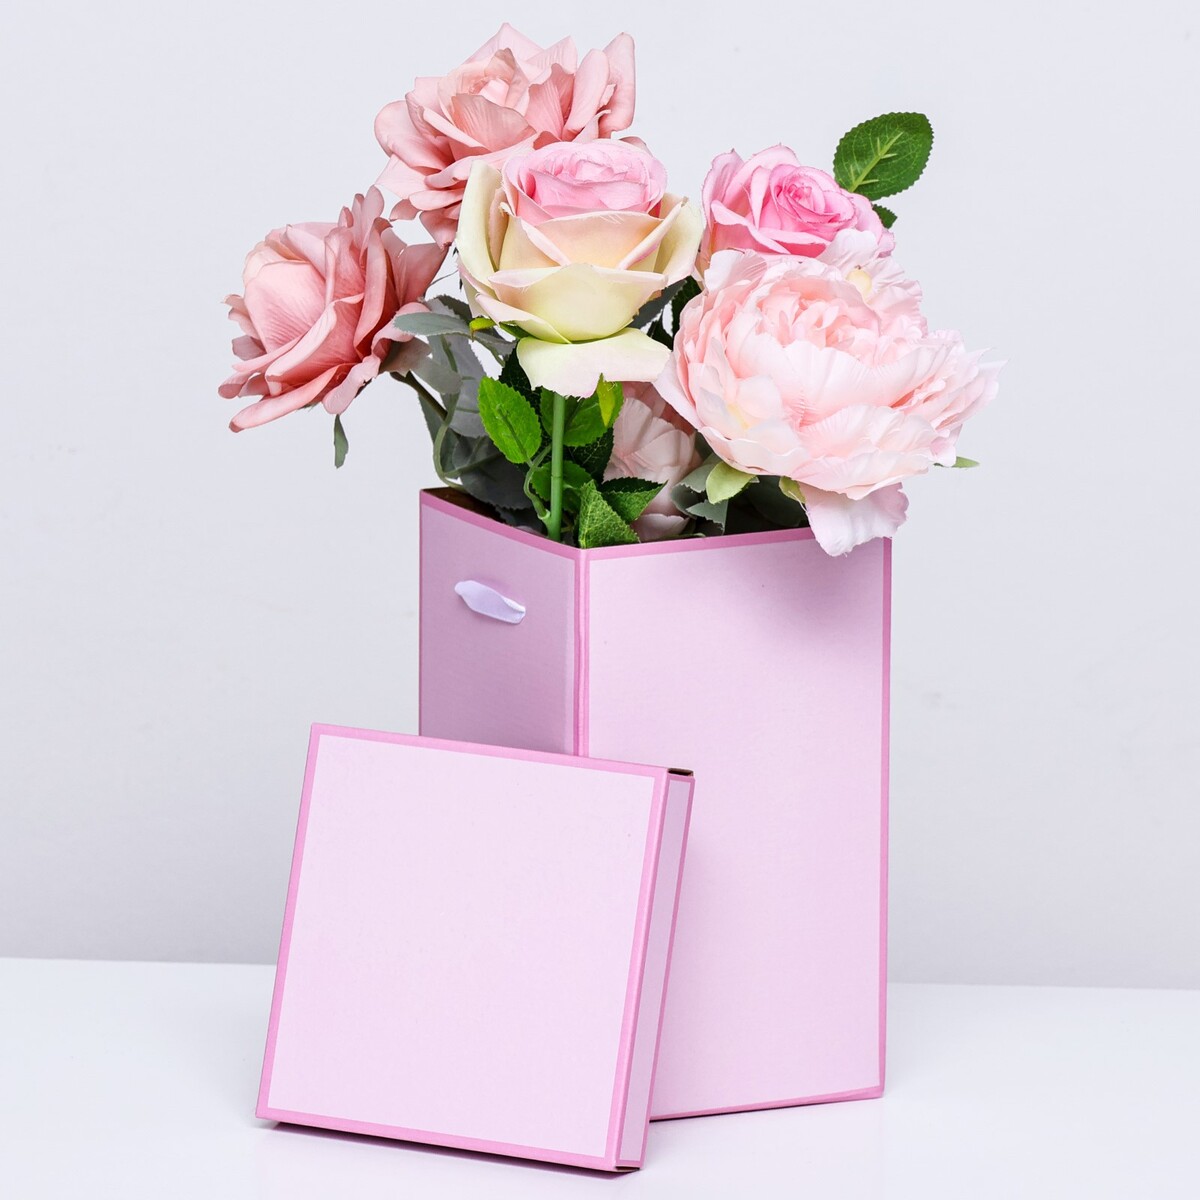 Коробка складная, розовая, 14 х 23 см коробка складная розовая 17 х 25 см